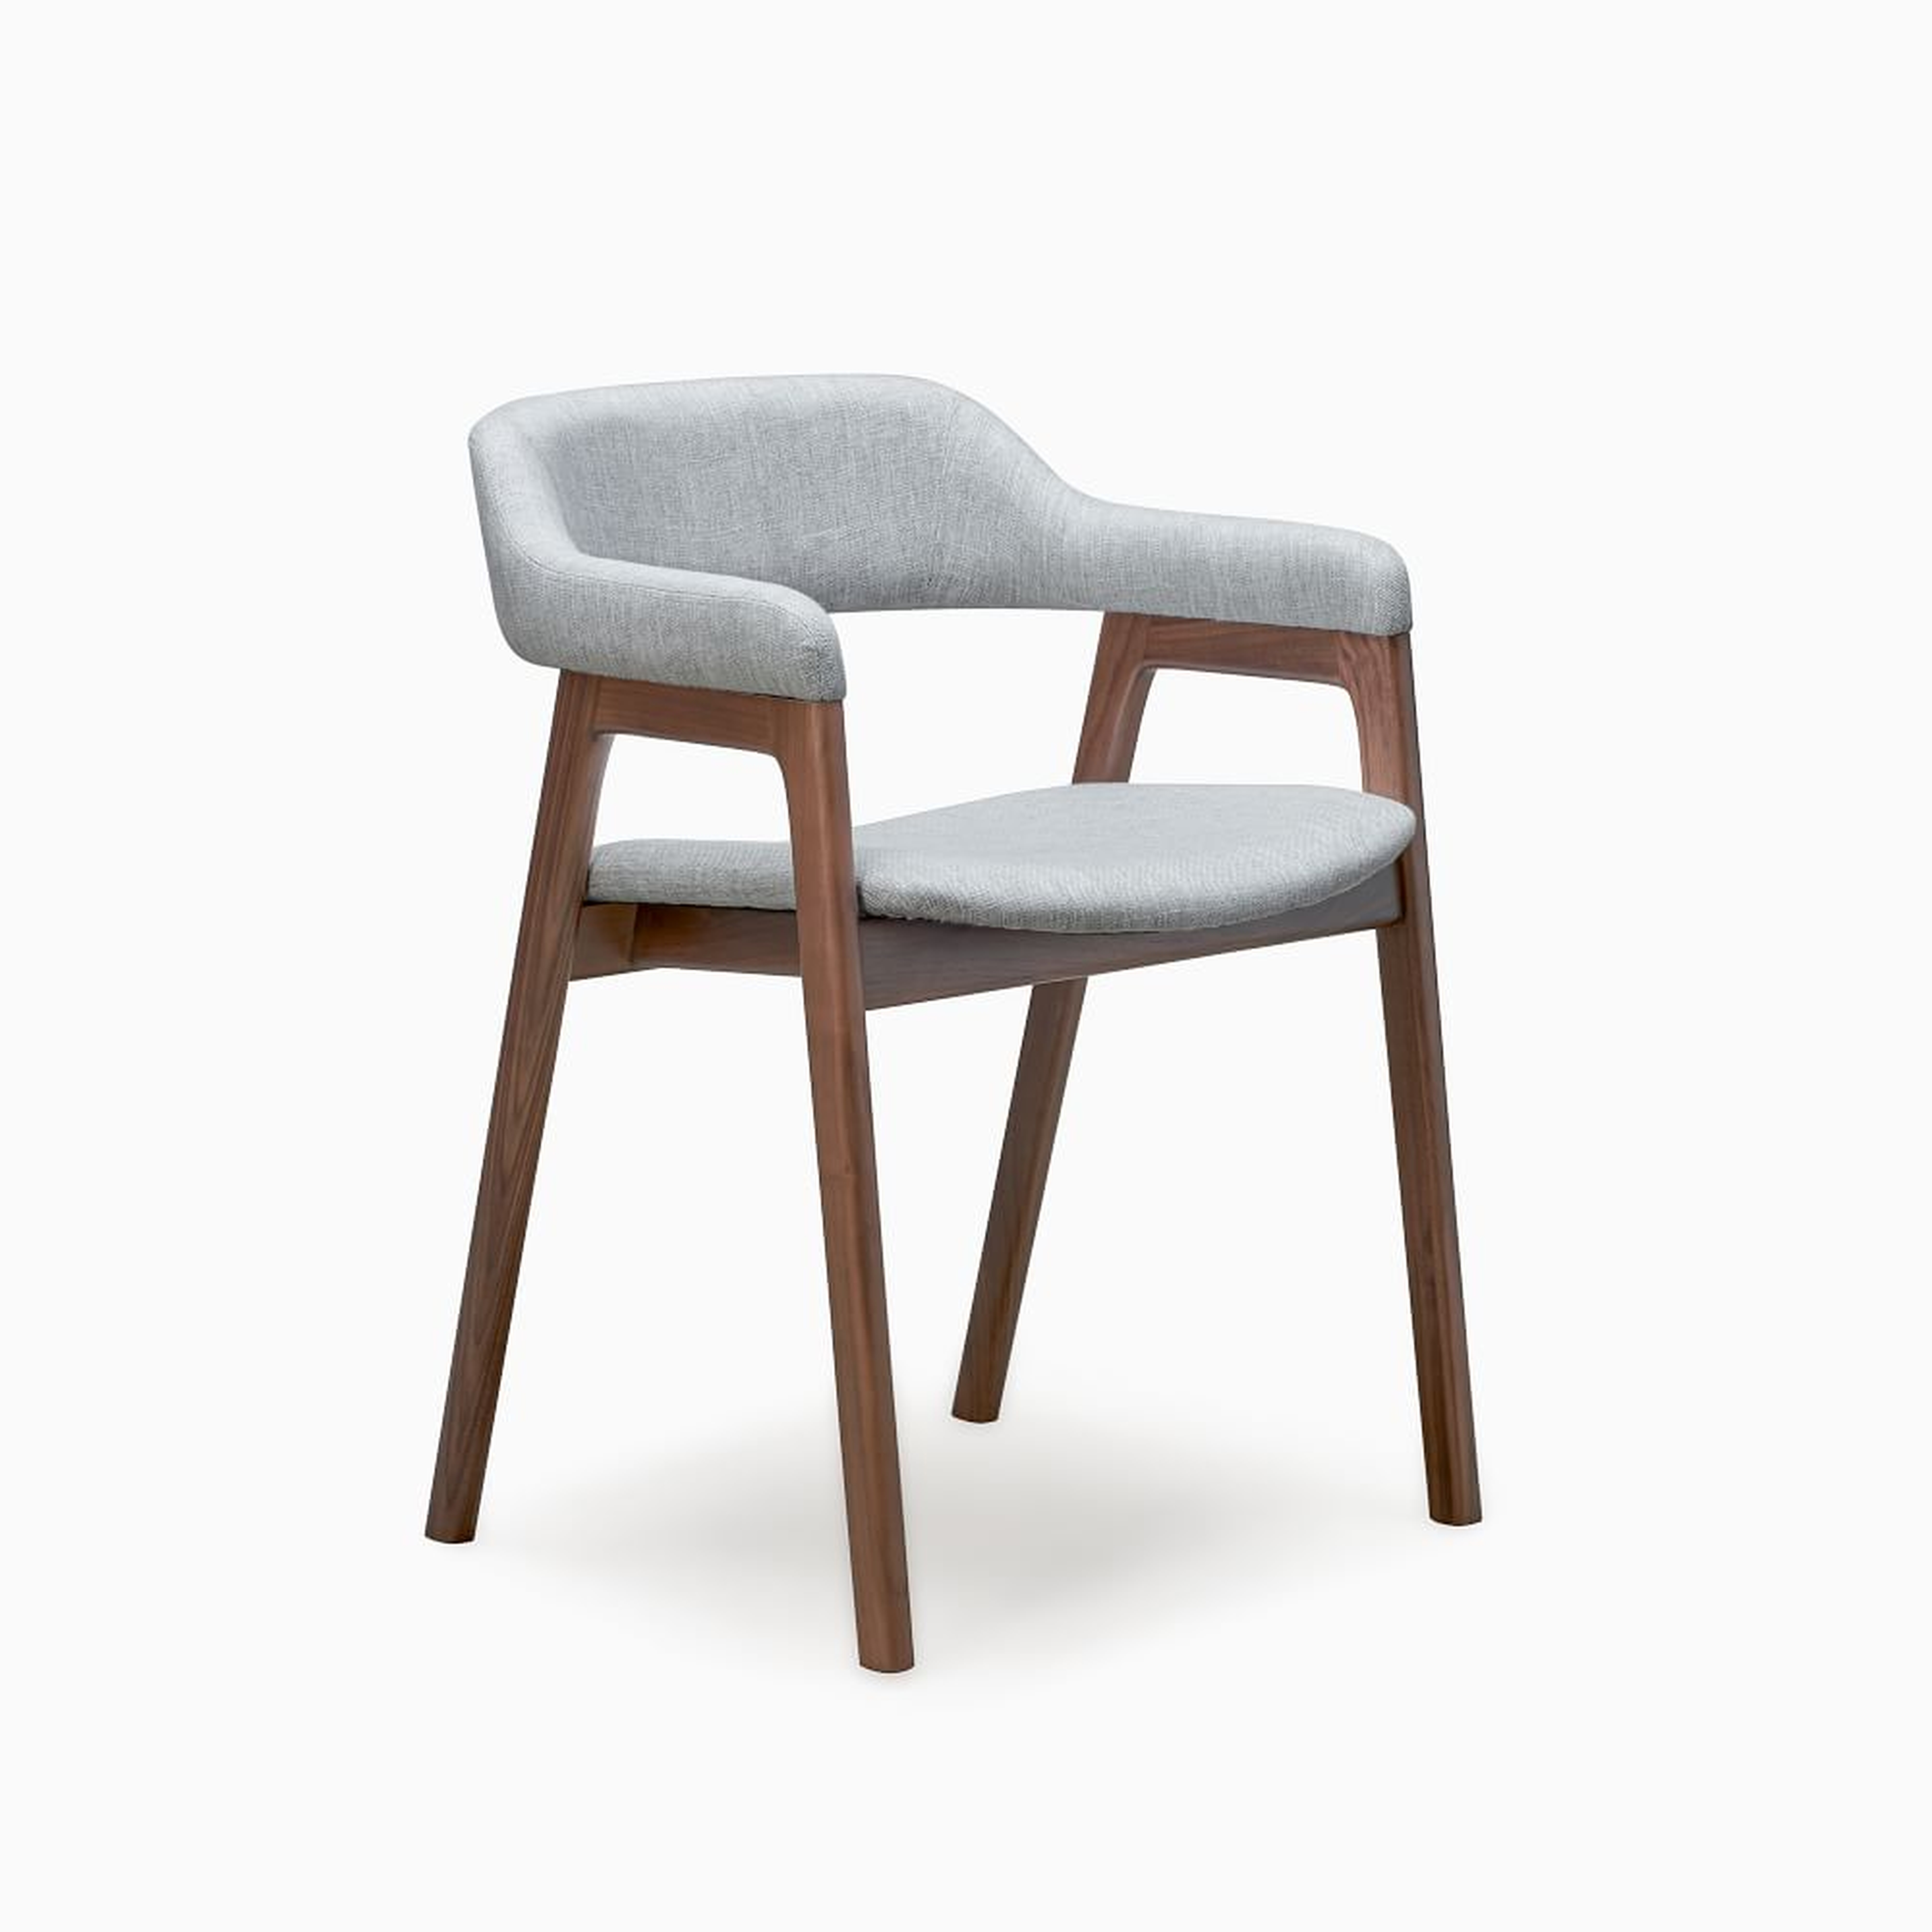 Abilene Upholstered Dining Arm Chair, Light Gray - West Elm